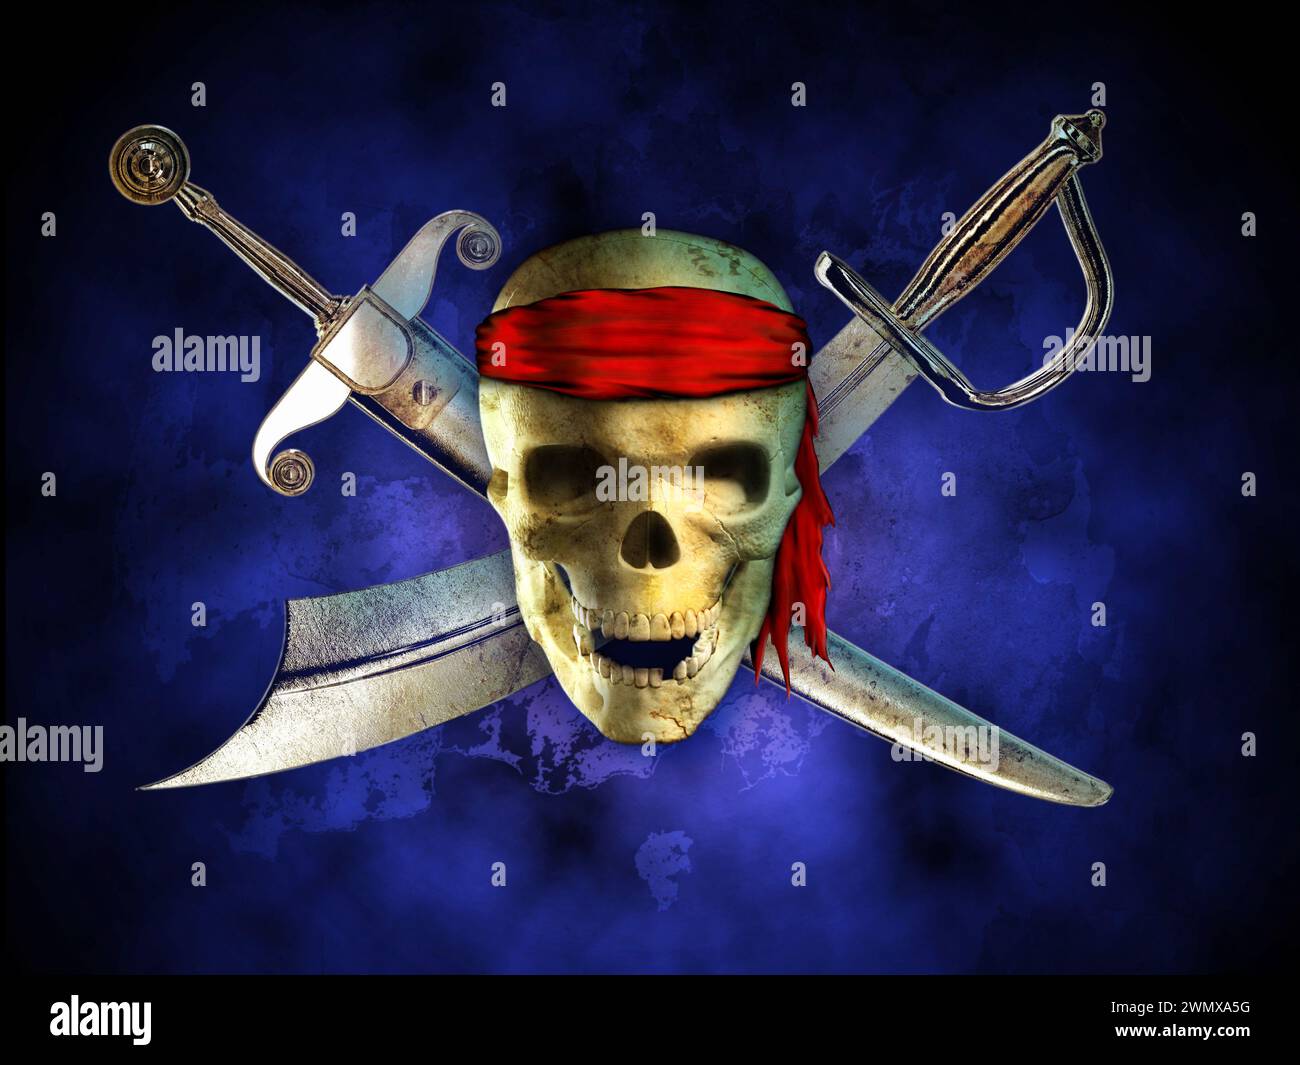 Minaccioso cranio dei pirati con due spade incrociate sullo sfondo. Illustrazione digitale. Foto Stock